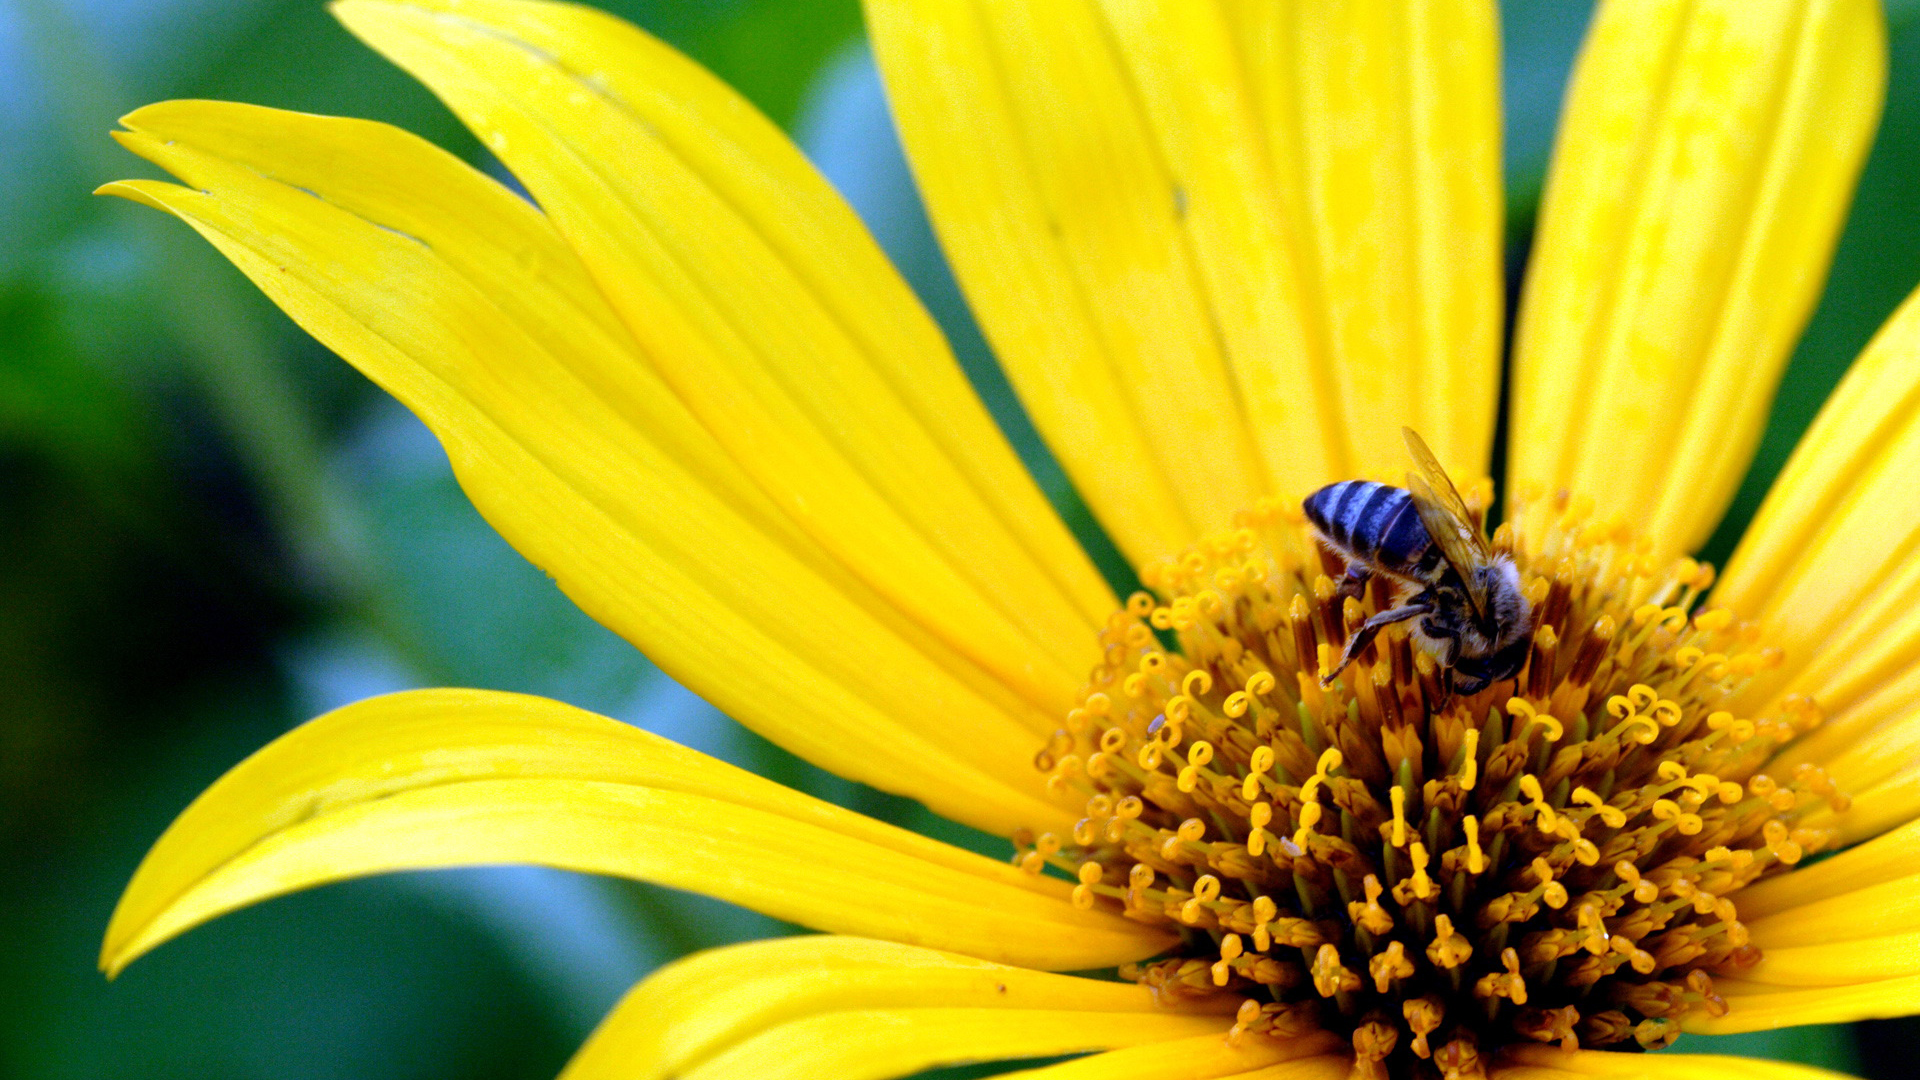 Скачать обои бесплатно Животные, Насекомые, Цветок, Пчела, Желтый Цветок картинка на рабочий стол ПК